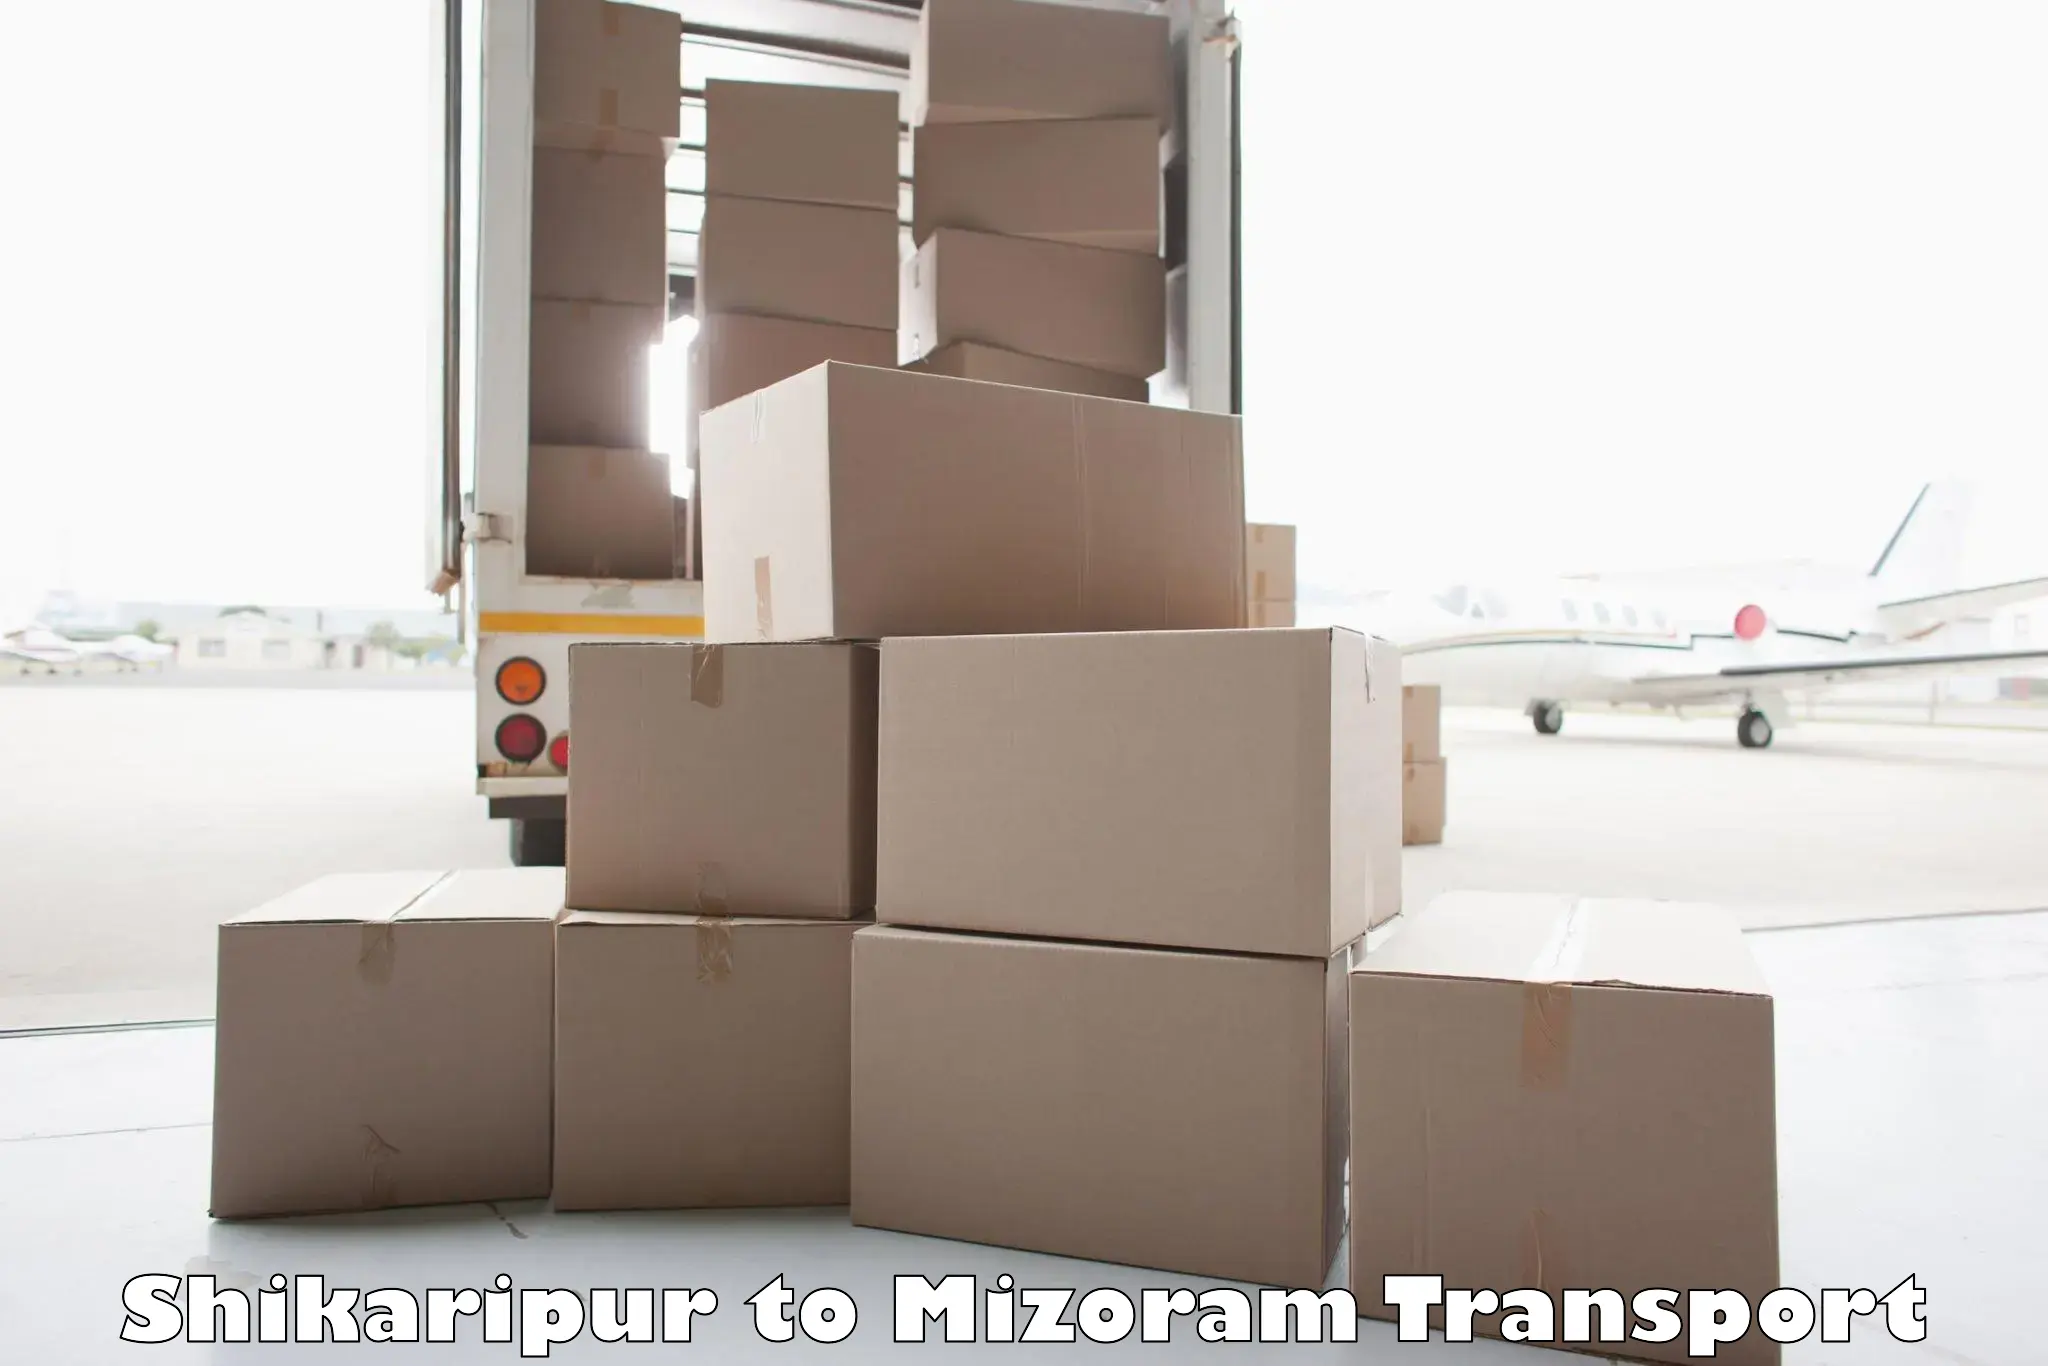 Two wheeler parcel service Shikaripur to Serchhip